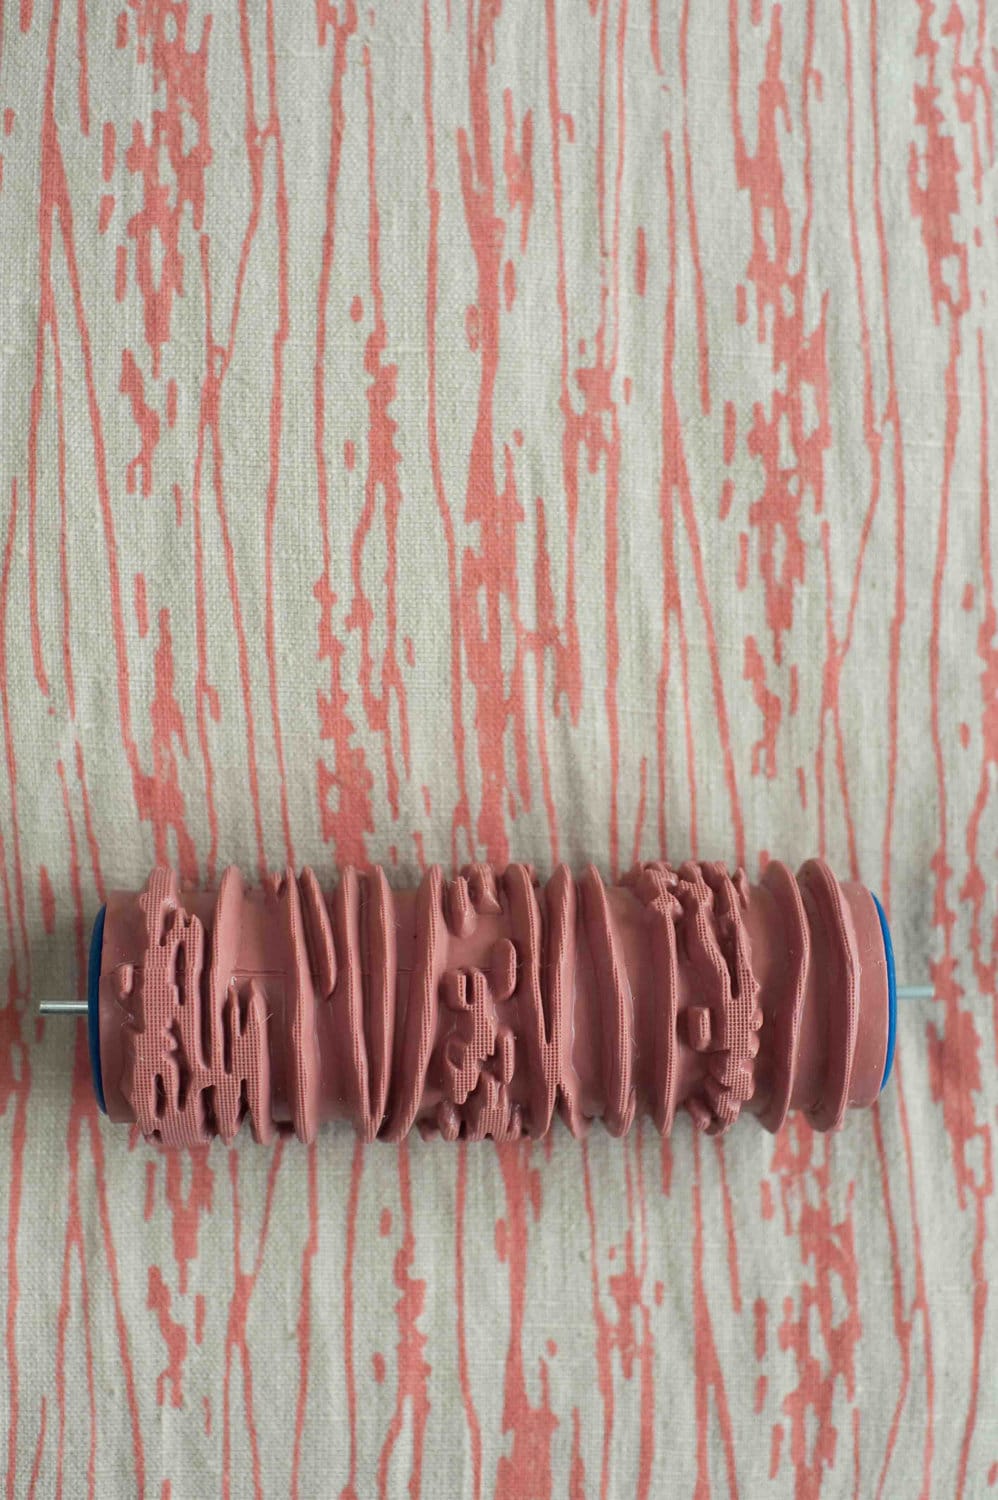 wallpaper paint roller